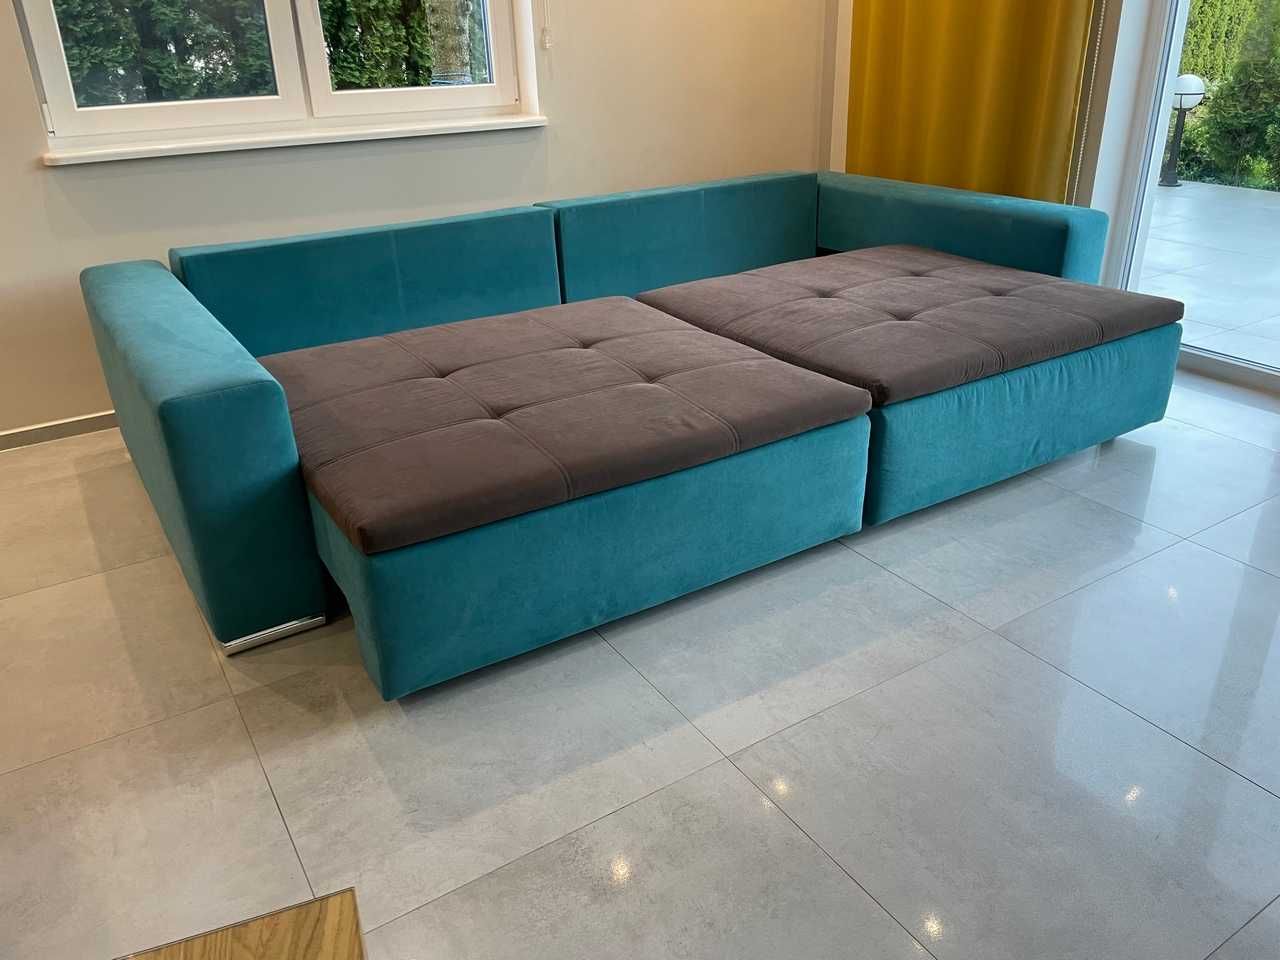 BigSofa / Oversize-sofa / Sofa XXL - bardzo wygodna!